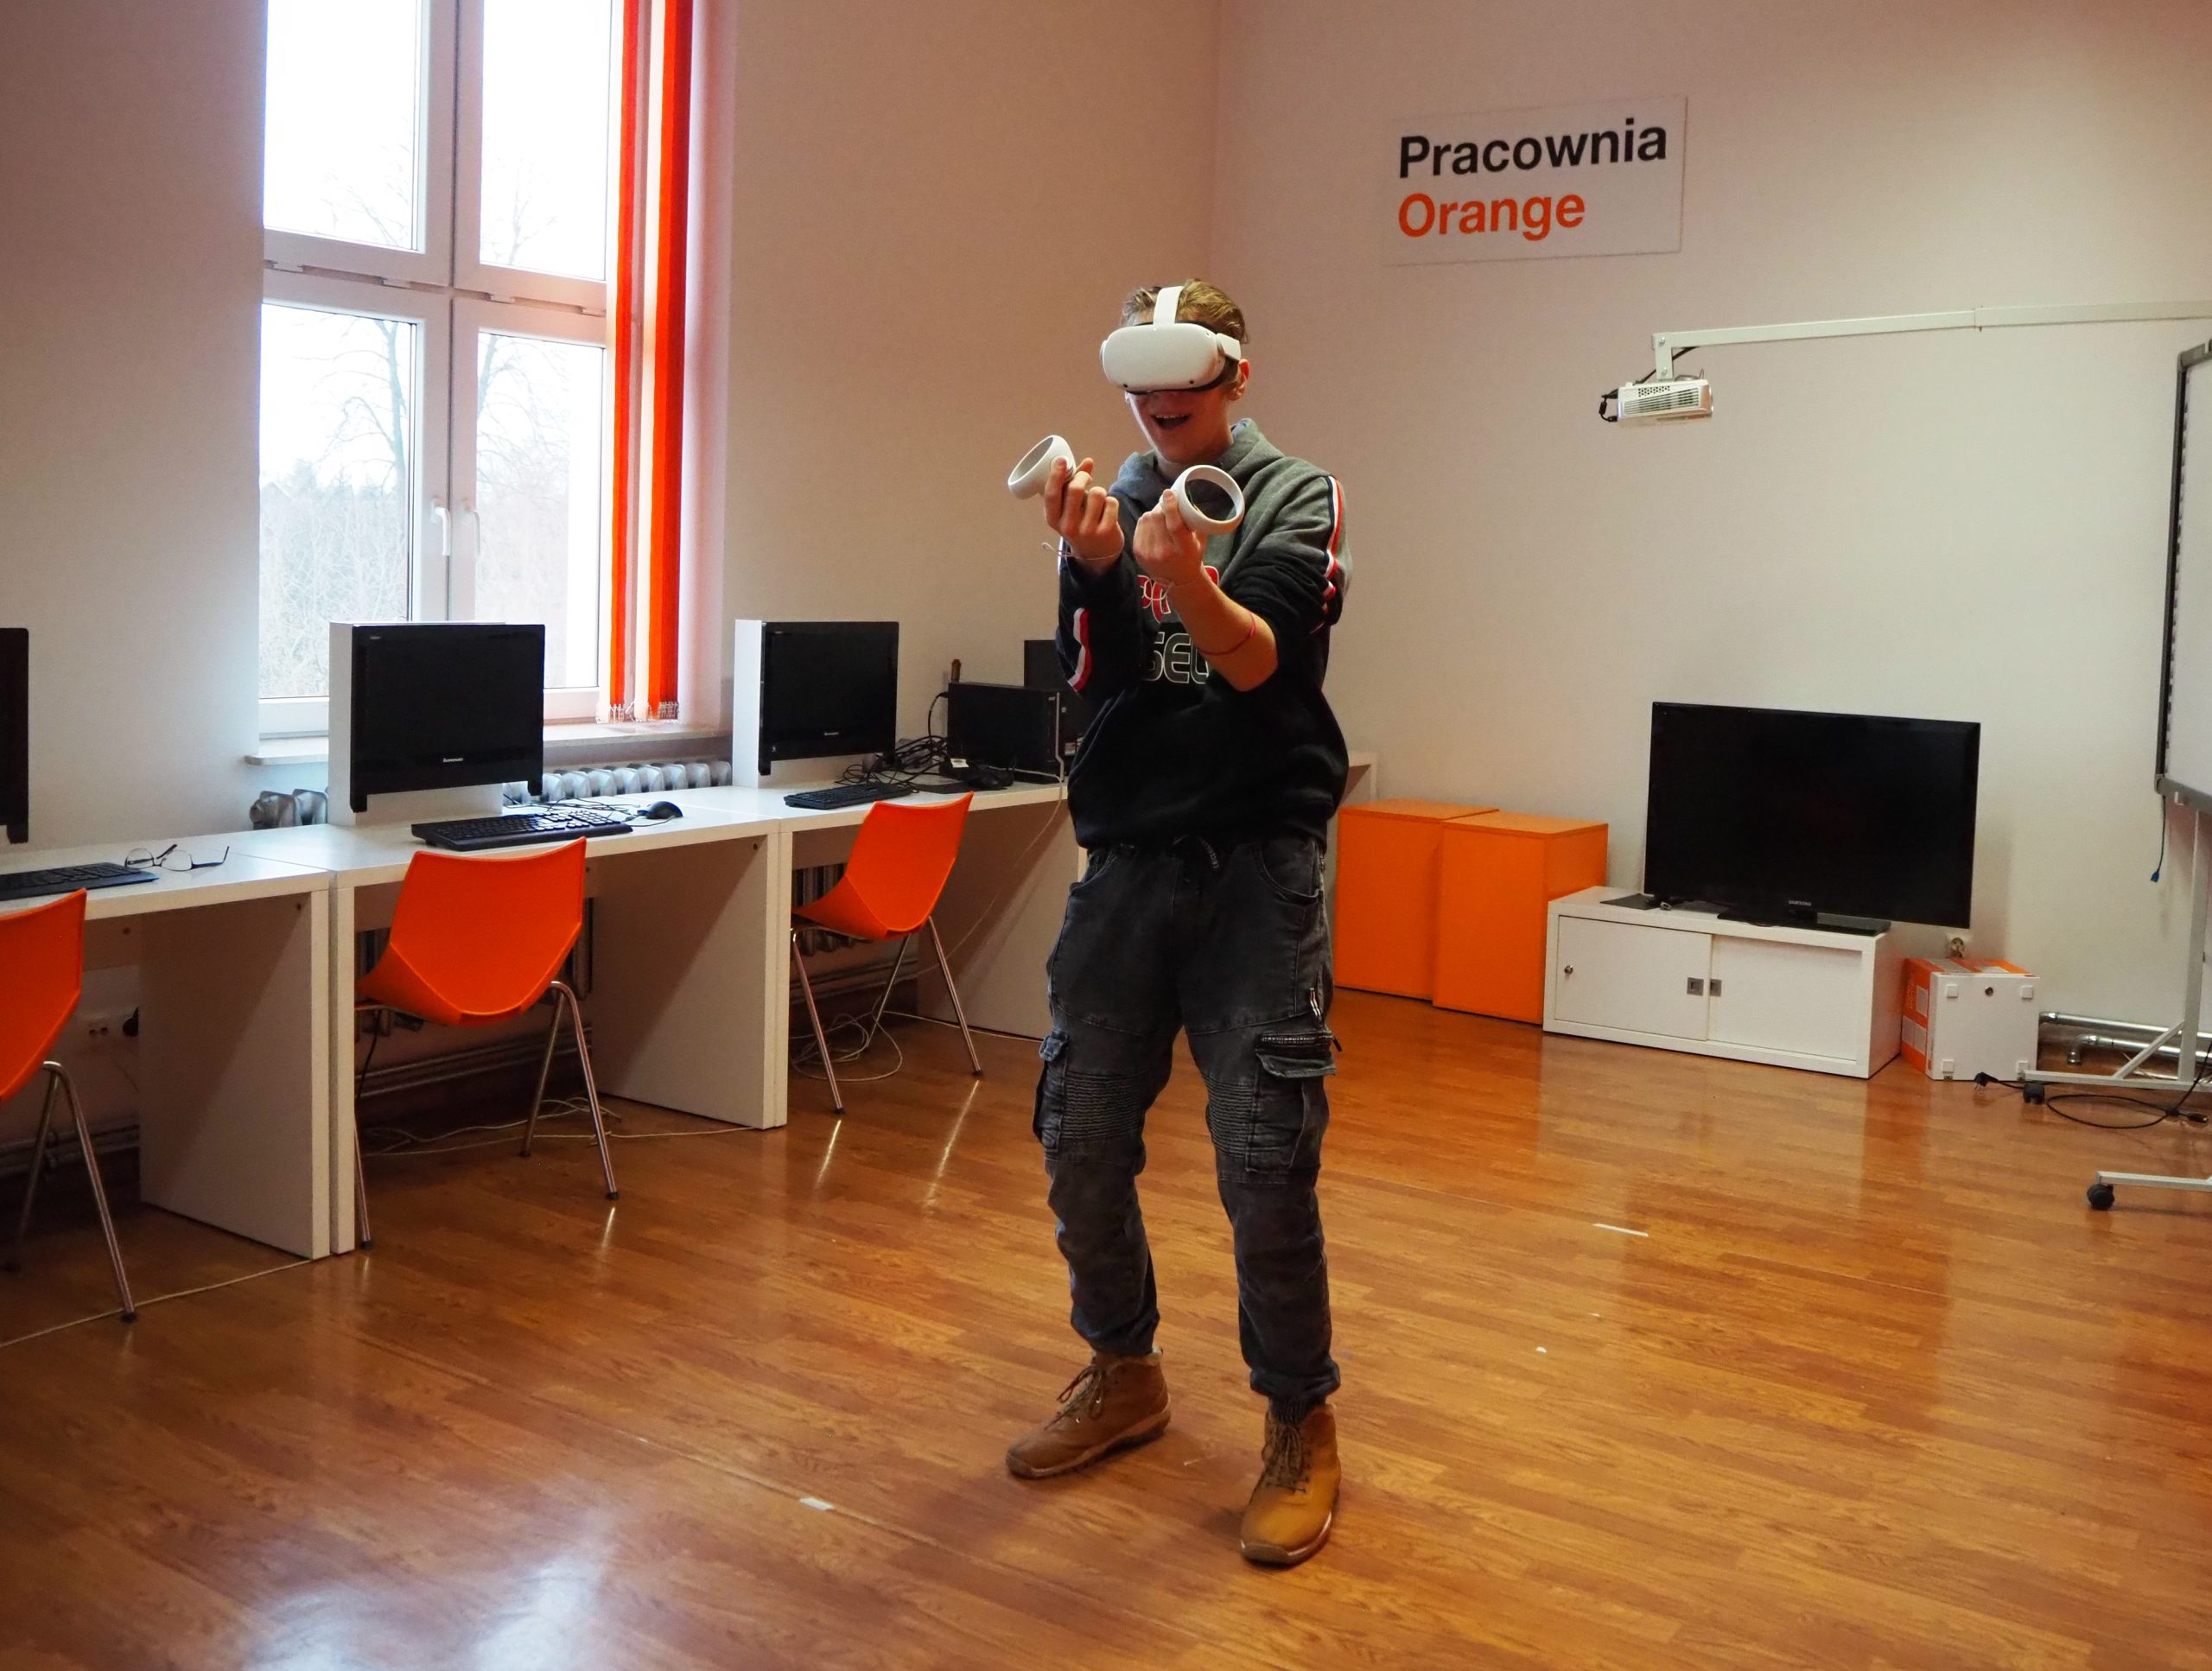 chłopak korzysta z gogli do wirtualnej rzeczywistości w pracowni orange